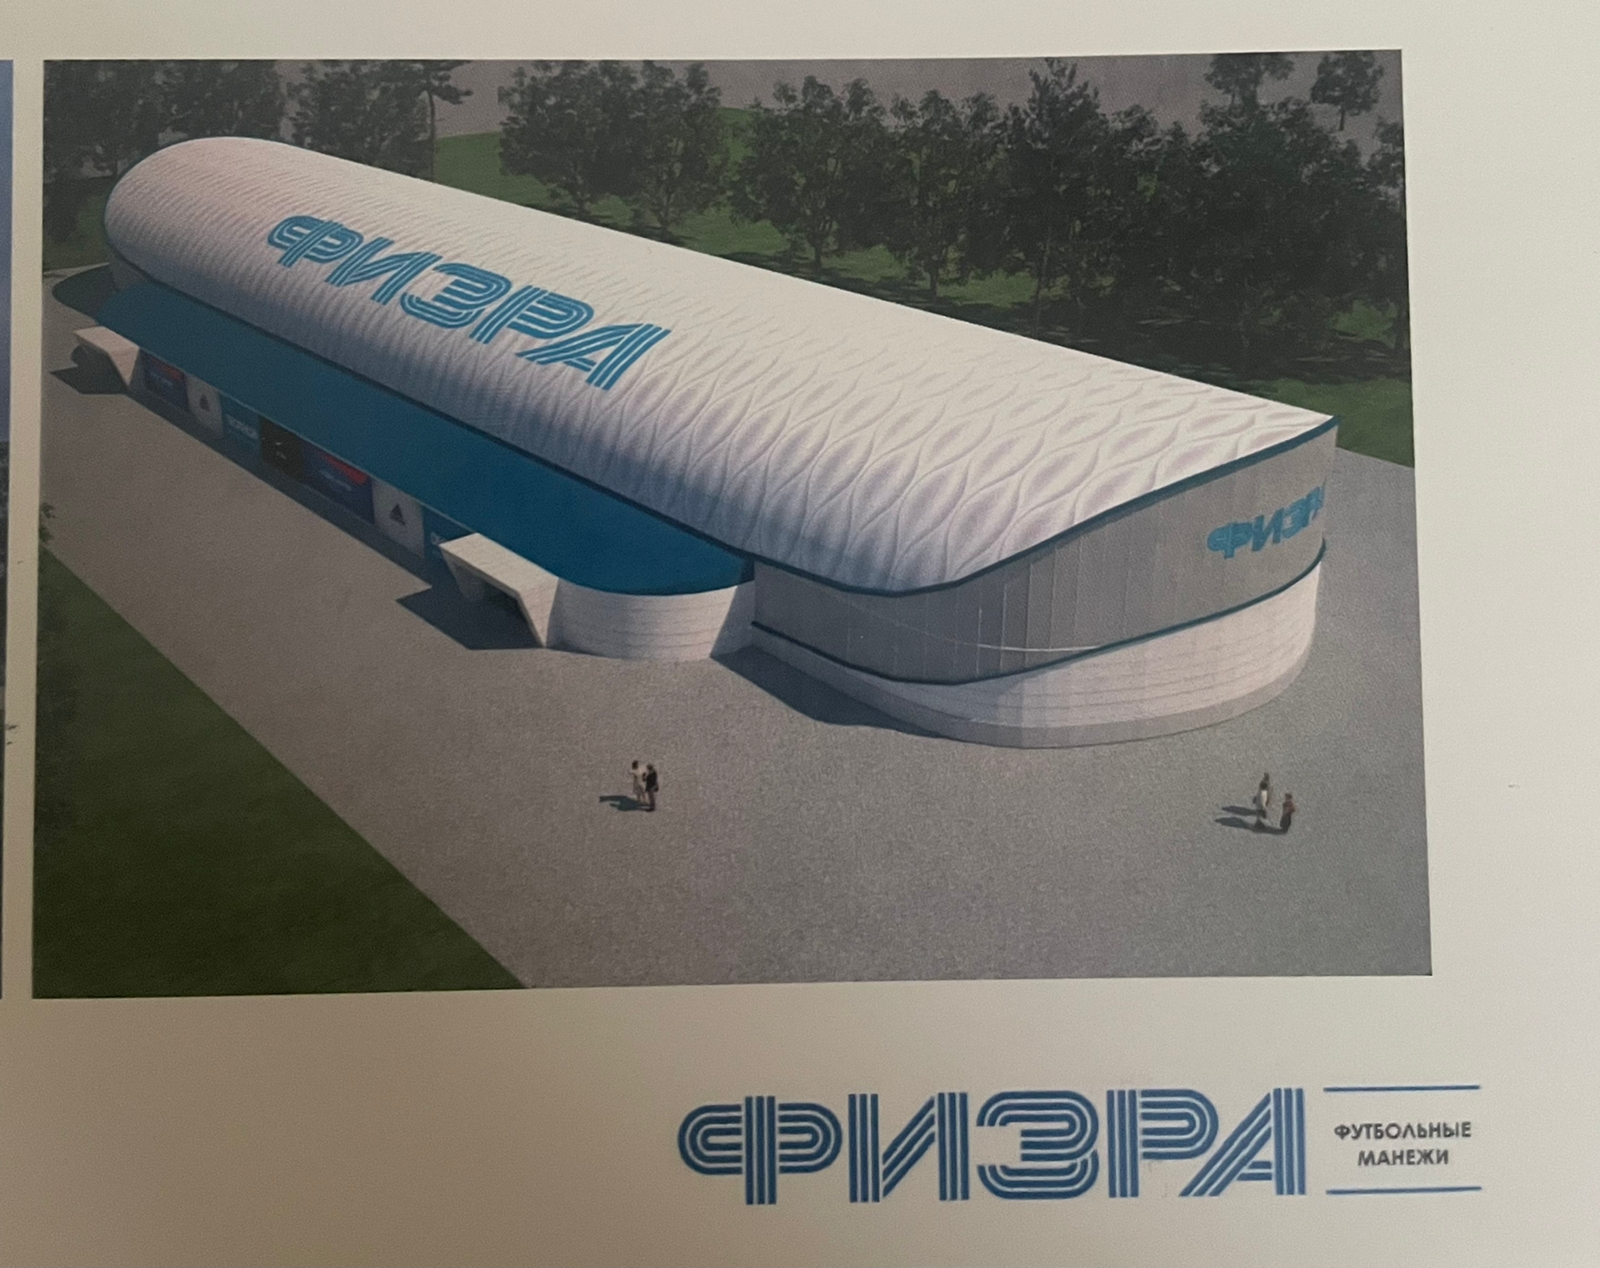 Инвестор показал, каким может быть Центр спорта «Физра» в Челнах (фото)